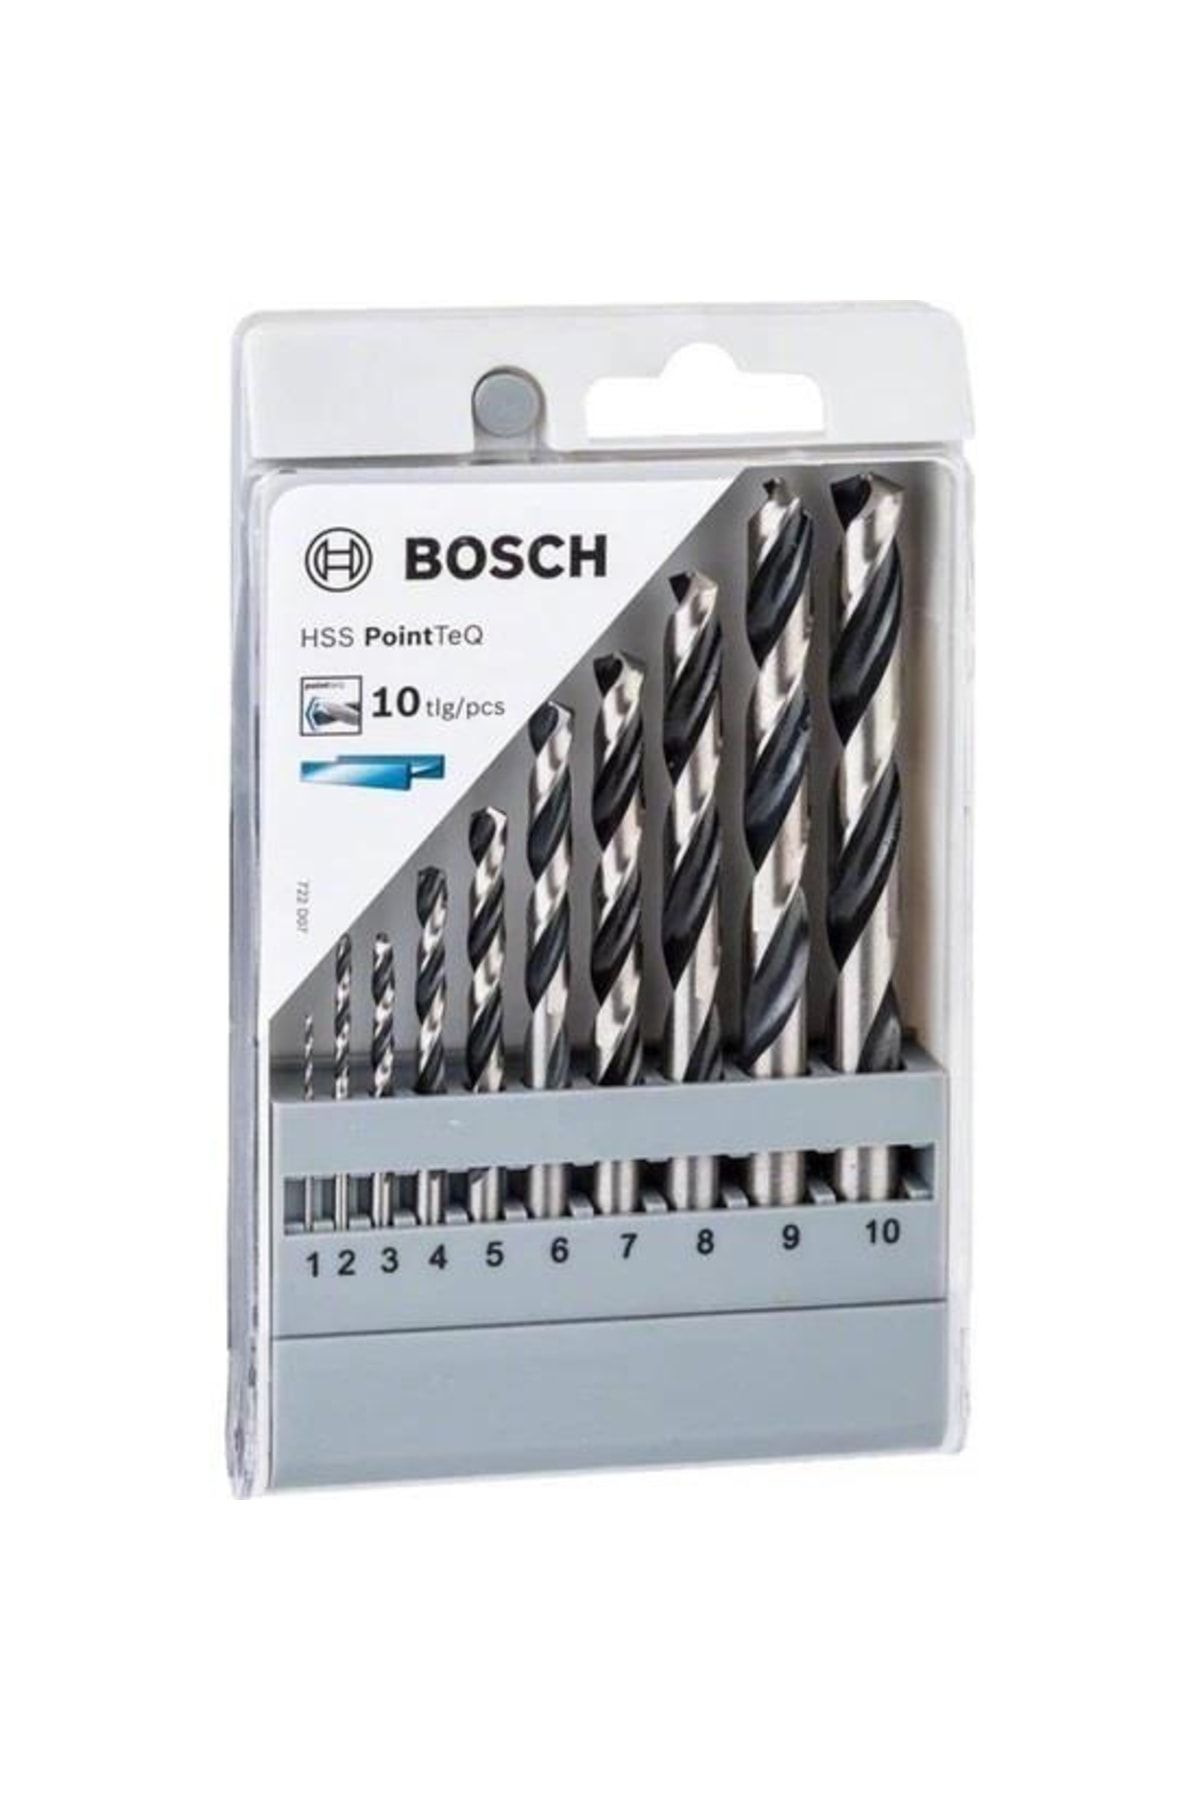 Bosch Hss Pointteq Metal Matkap Ucu Seti 10 Lu